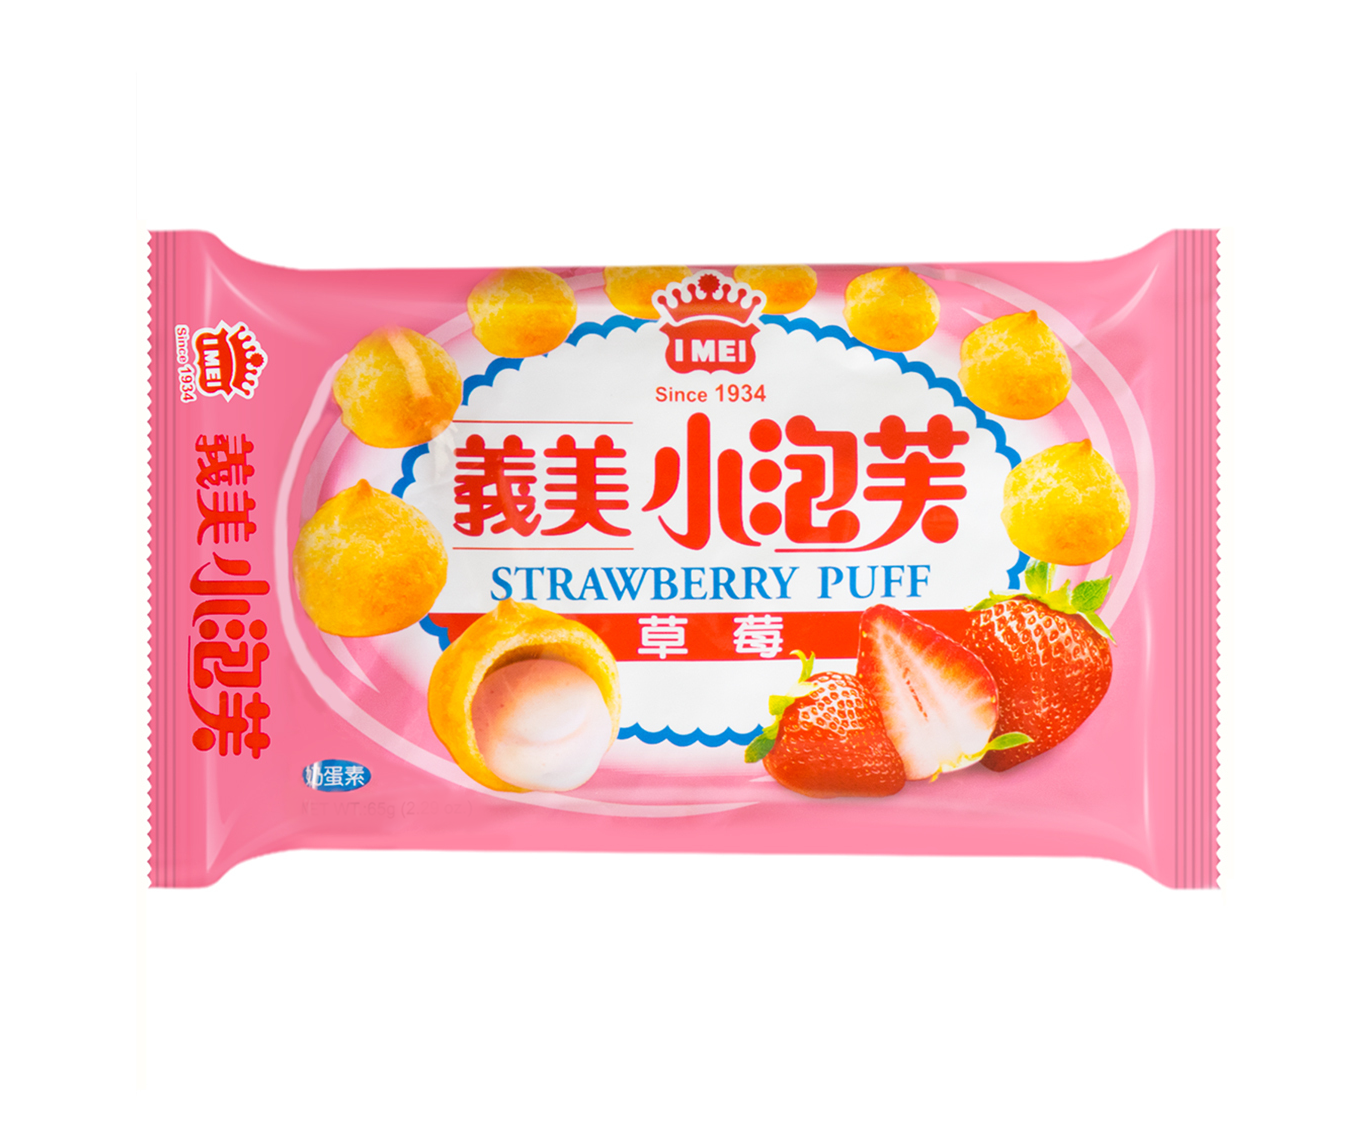 I Mei Strawberry puff (义美 小泡芙草莓味)